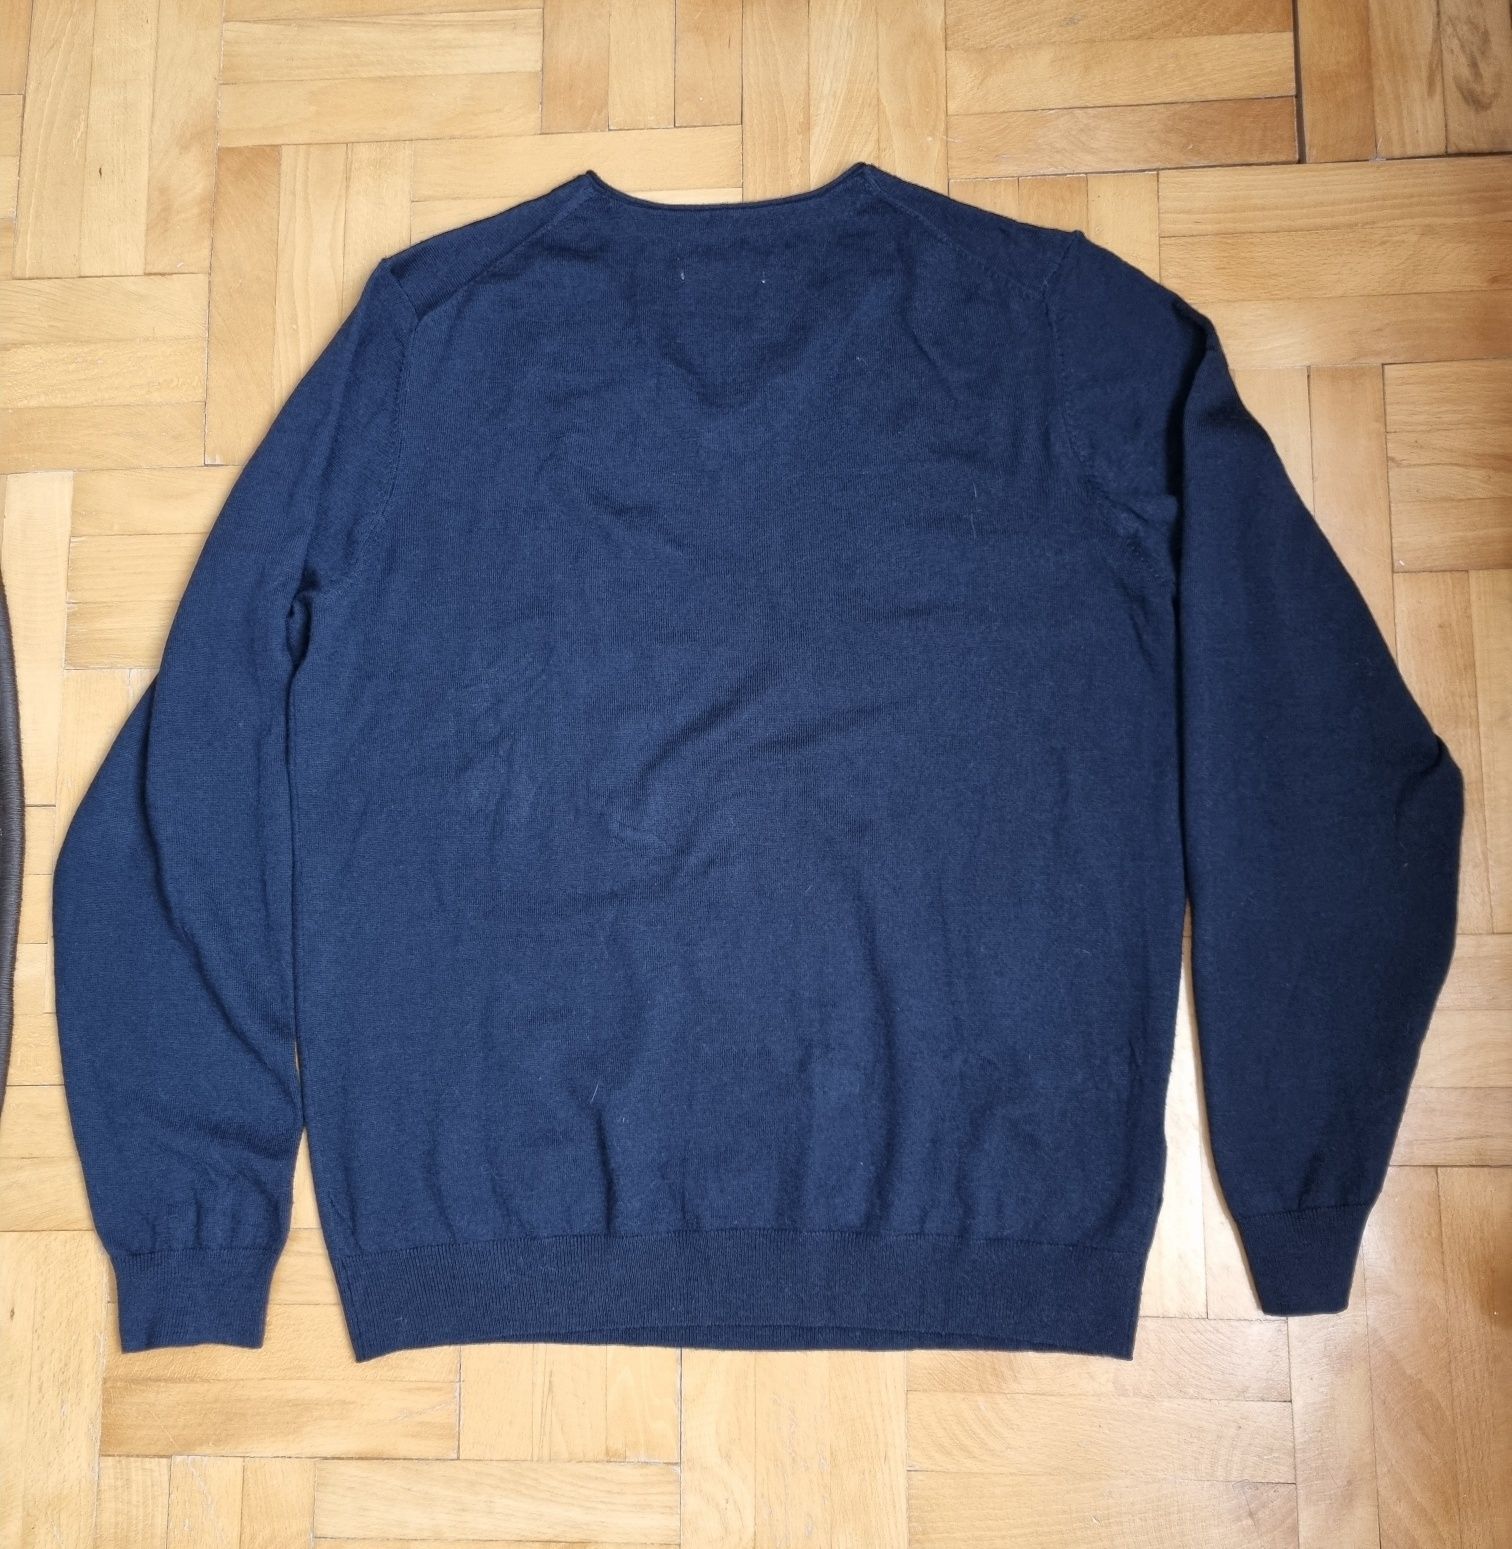 Bluză / pulover Mango, bărbați, V-Neck, Lână Merinos - L